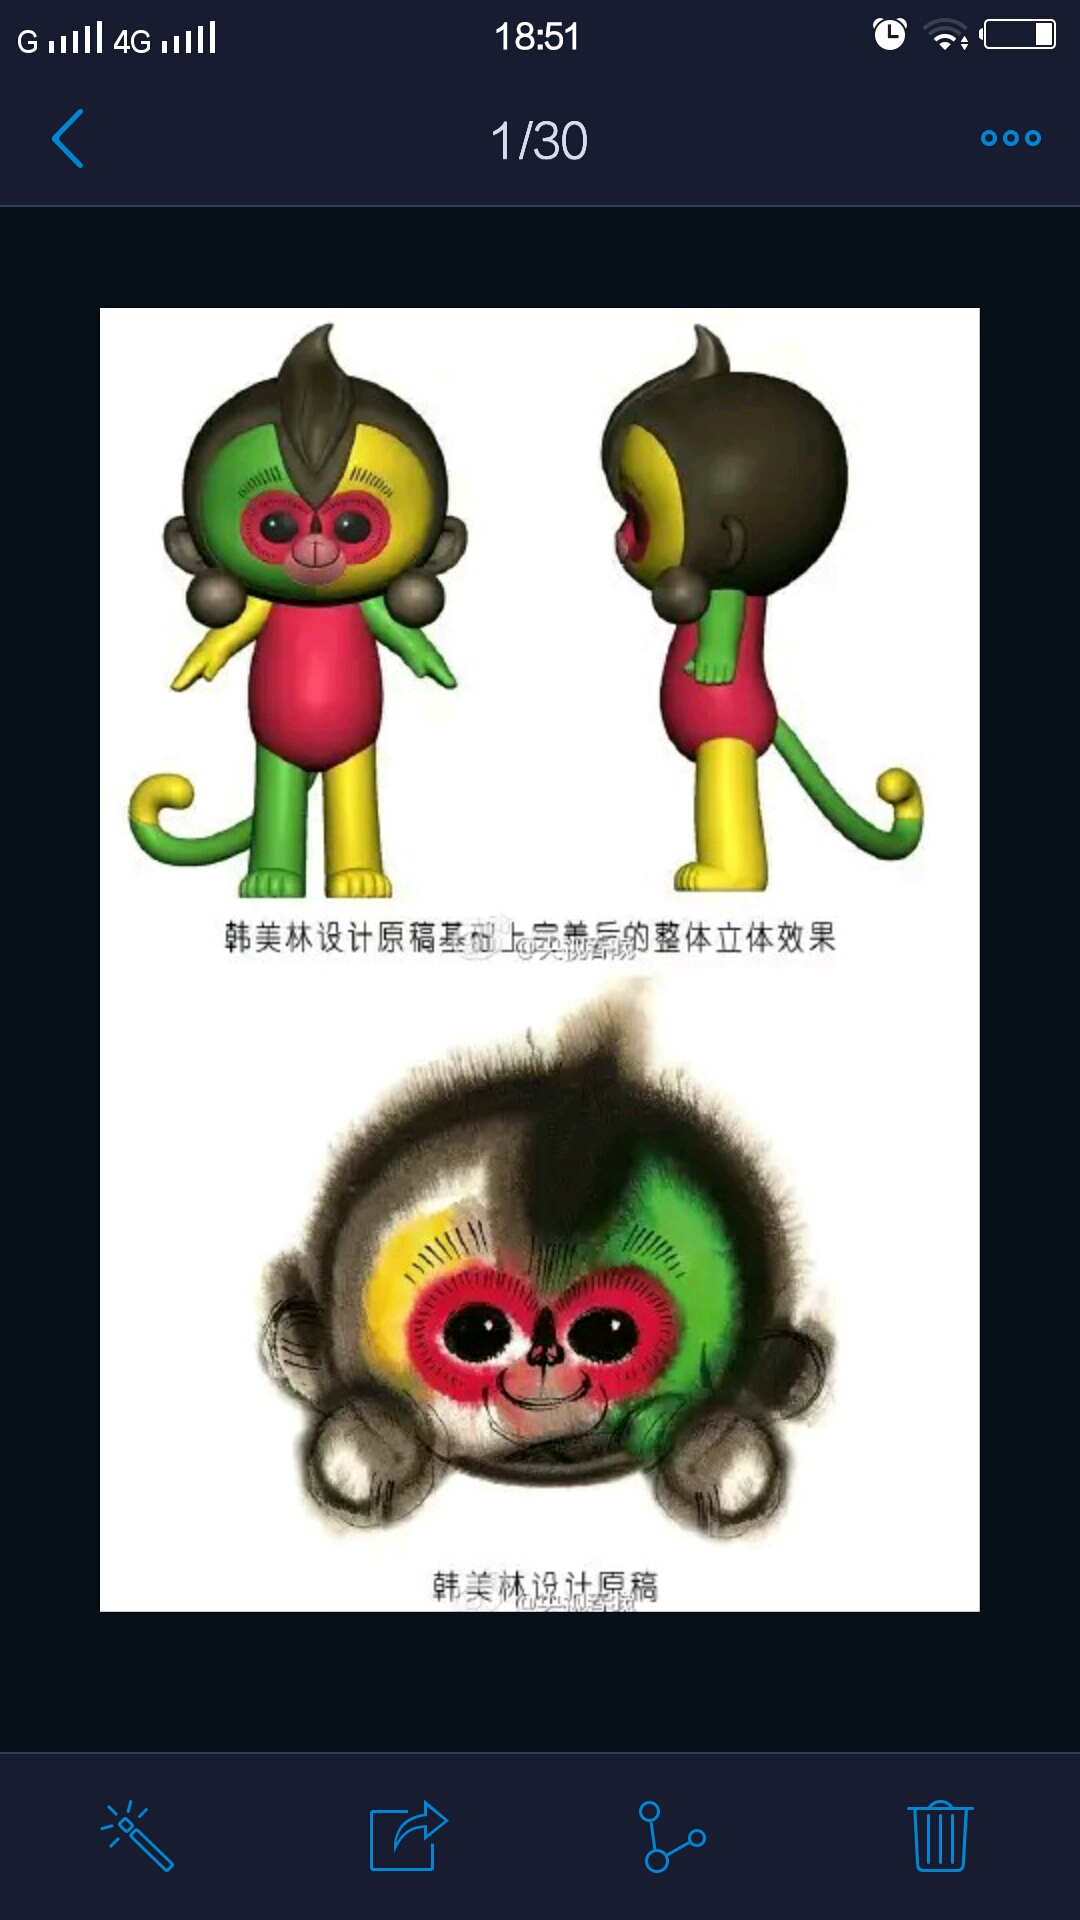 韩美林设计的吉祥物图片